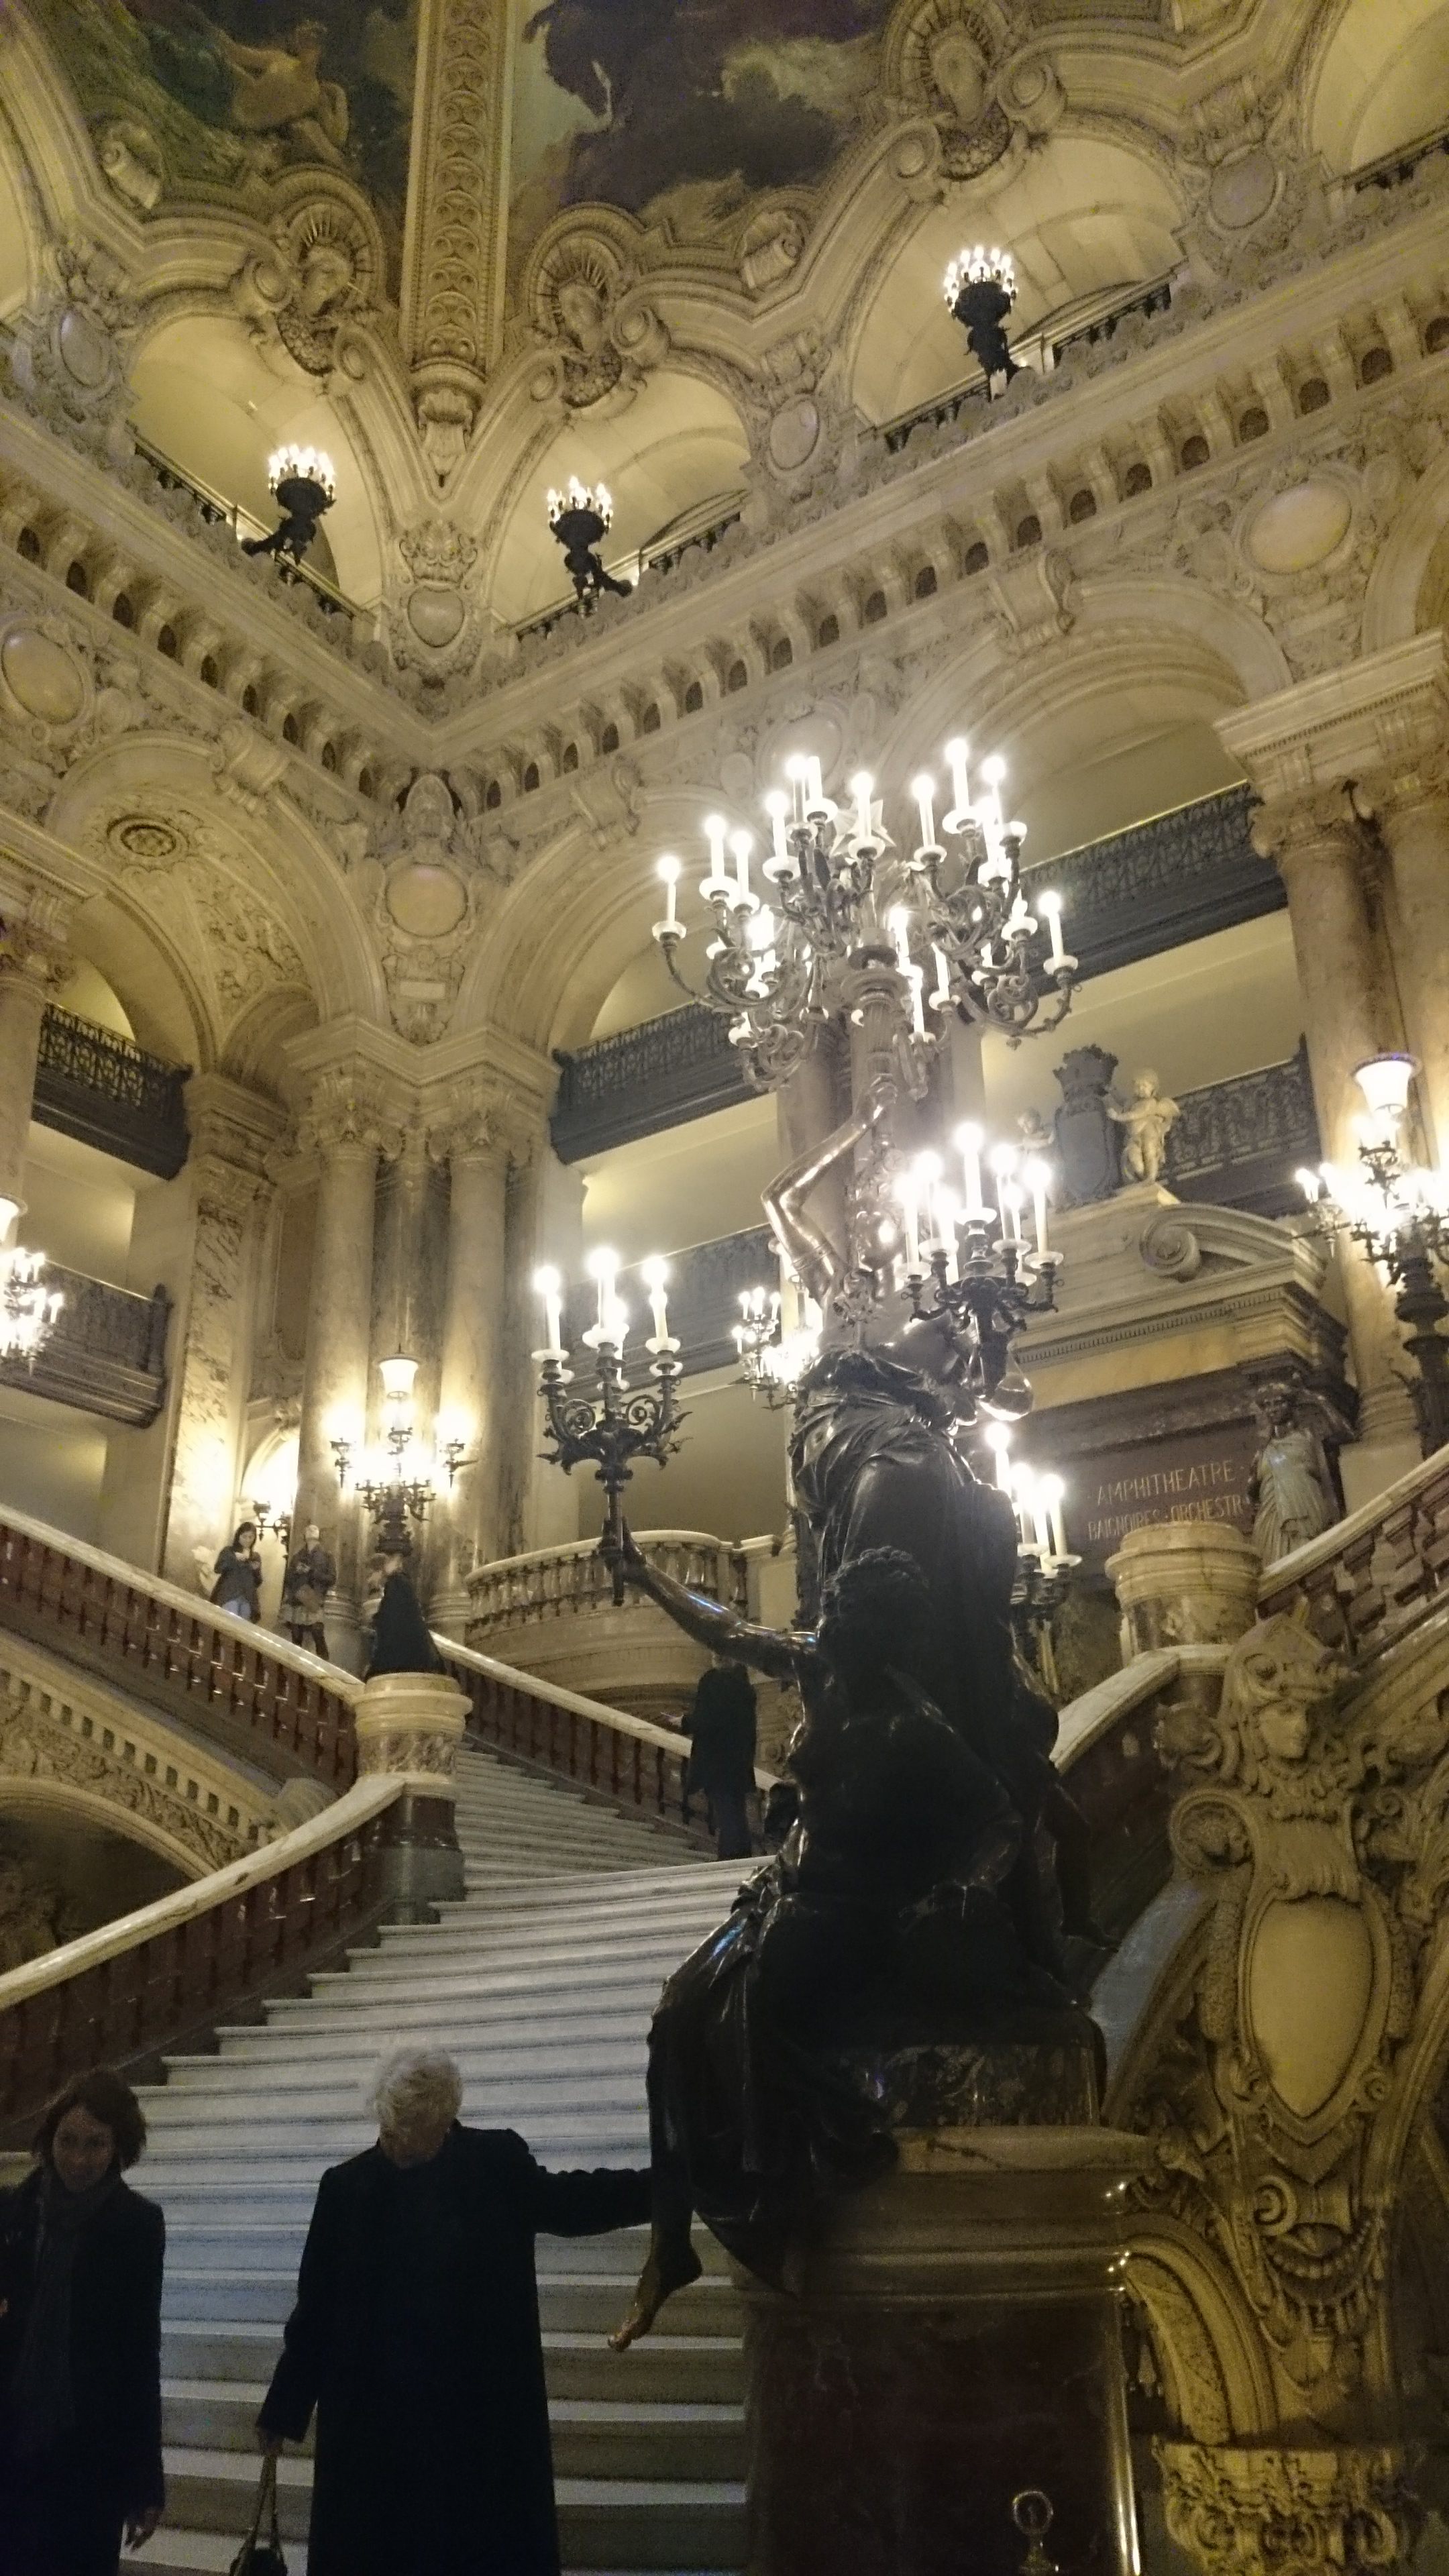 dsc 1014 - Una visita a la Opera de Paris (Palais Garnier)